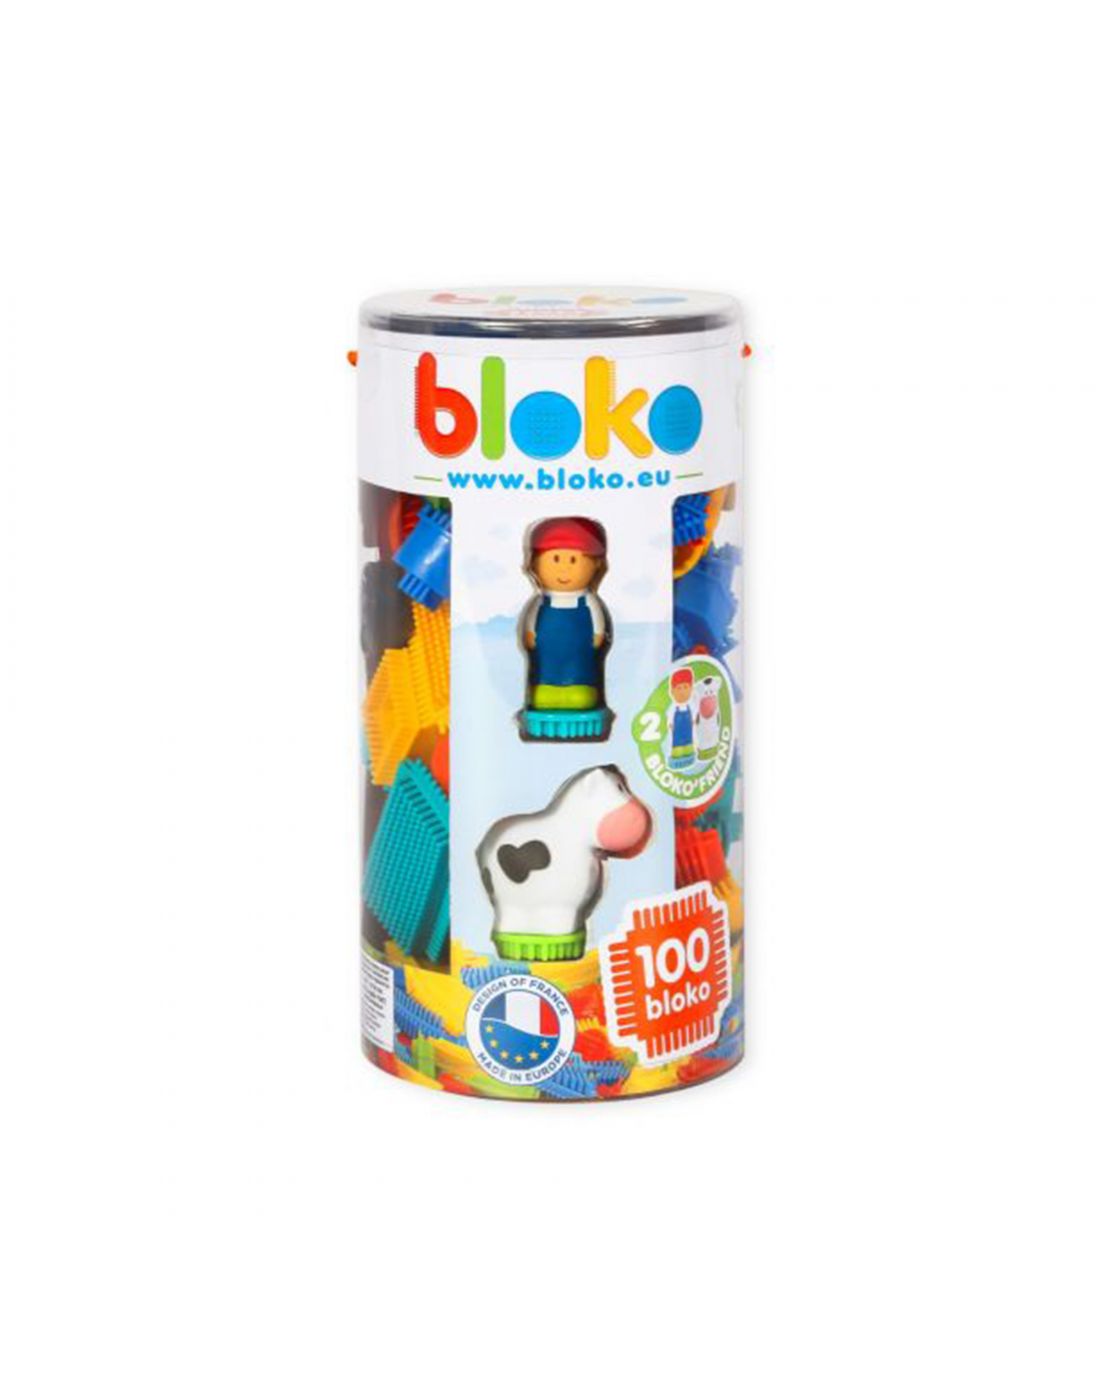 Imaginarium Kids Toy Tube 100 Bloco with 3D Farm Figurines